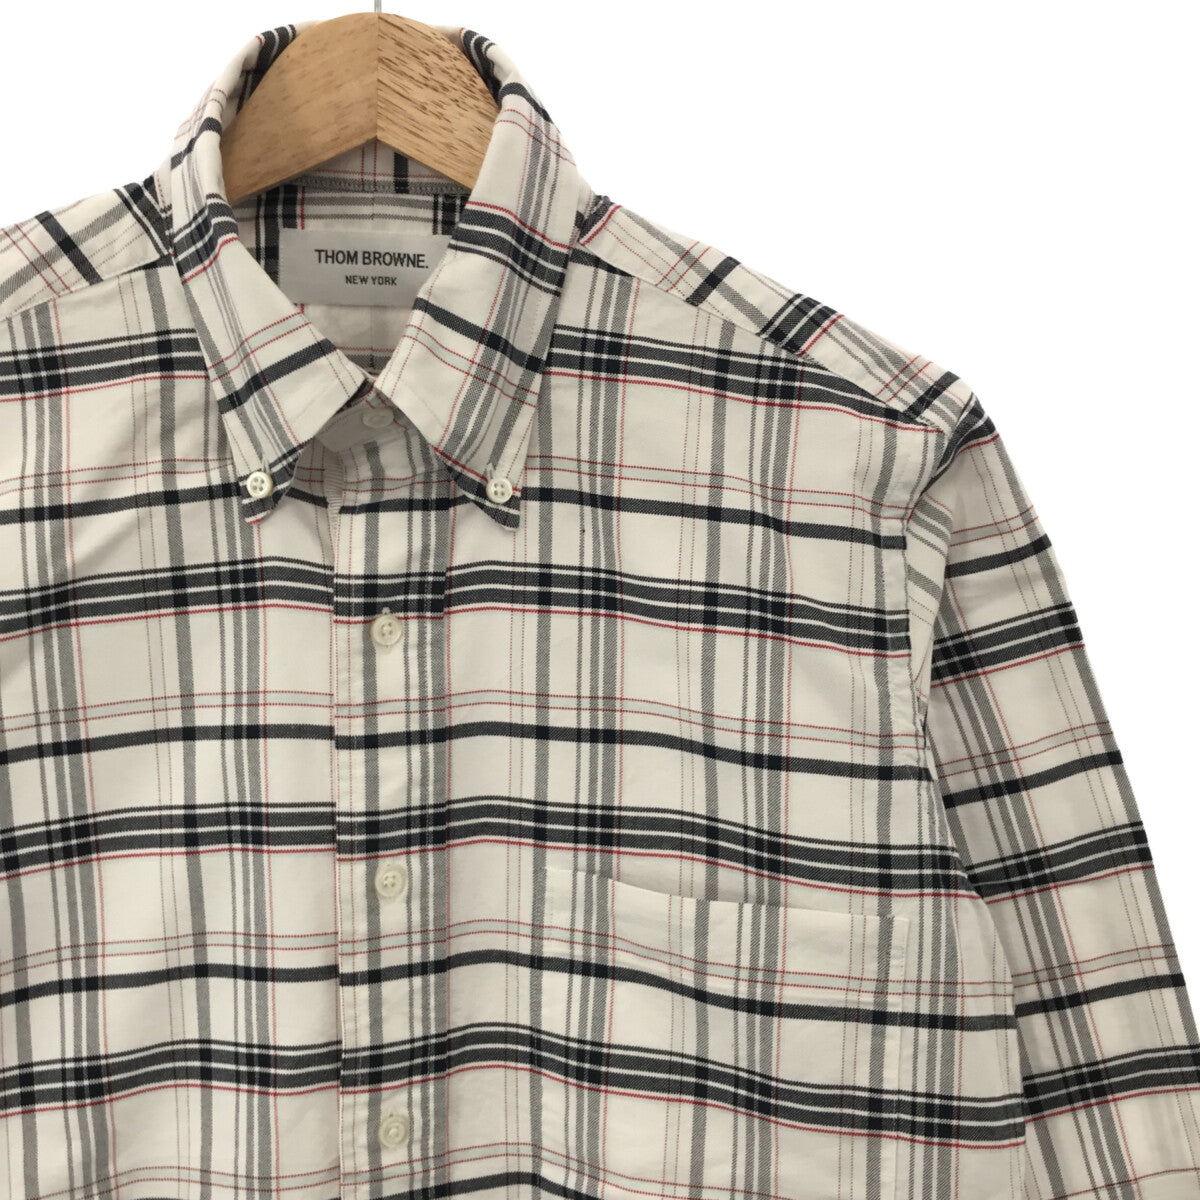 THOM BROWNE トムブラウン チェック ボタンダウンシャツ 半袖シャツ ネイビー/ホワイト